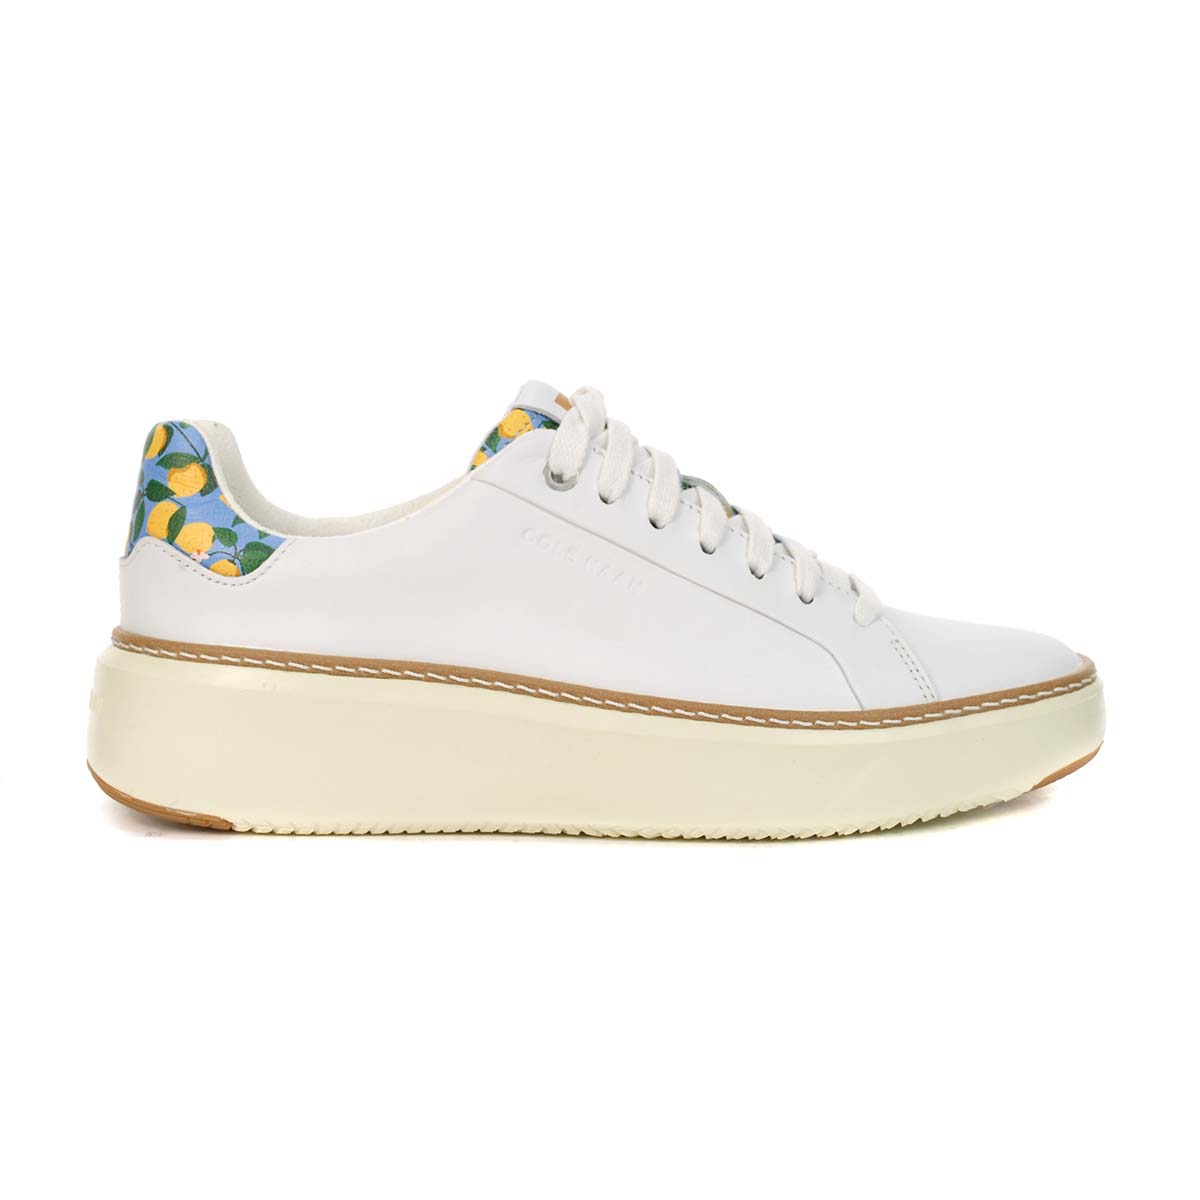 Cole Haan Women's GrandPro Topspin White/Azure Lemon Sneakers W26668